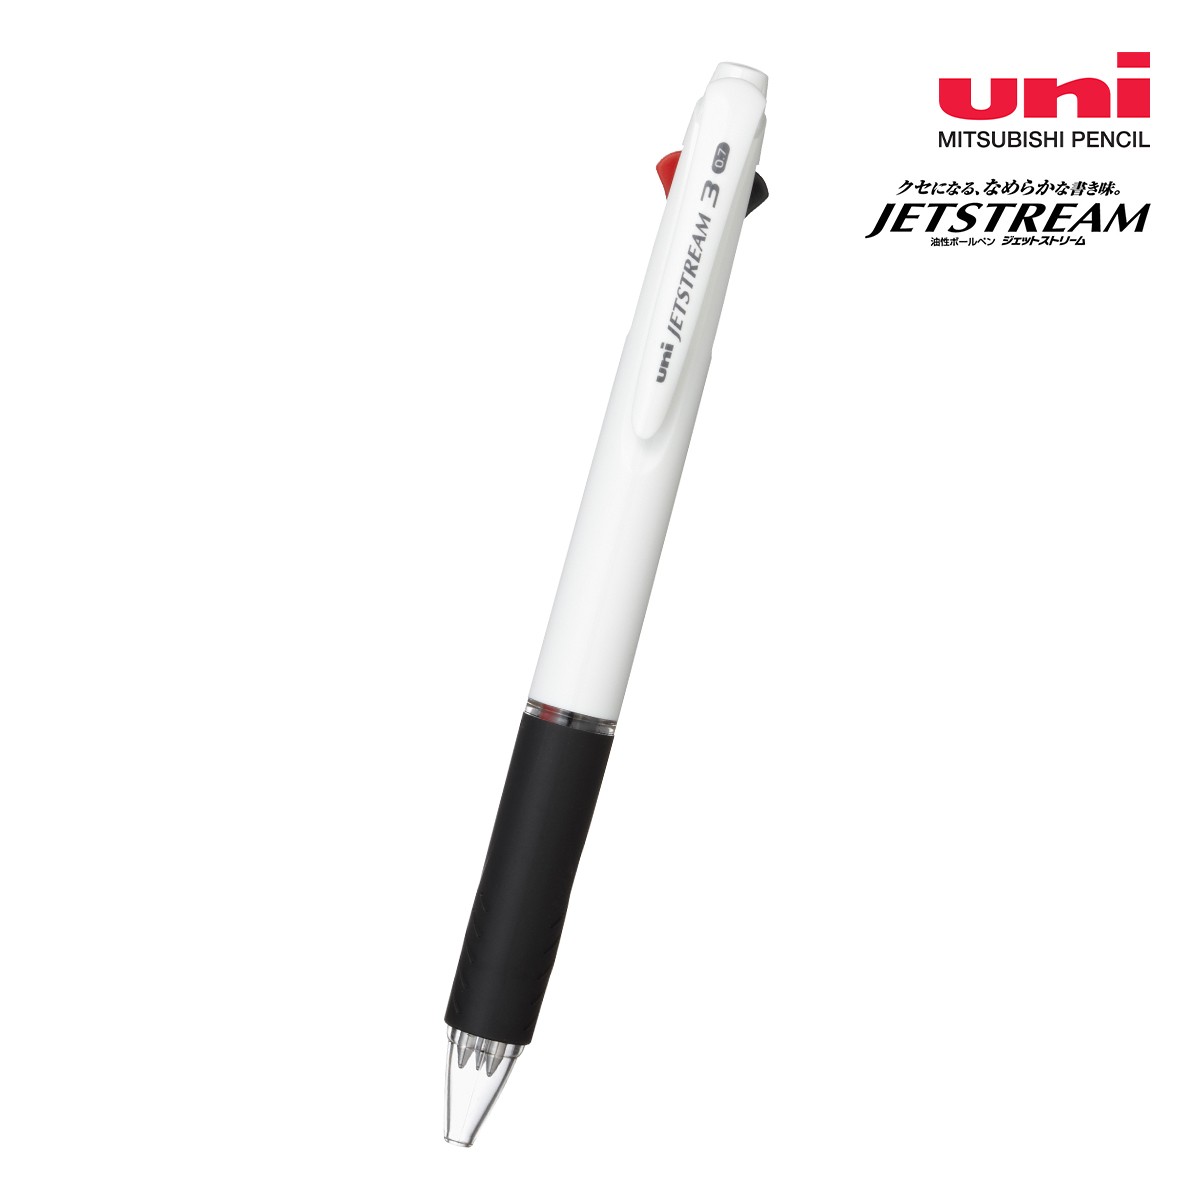 三菱鉛筆 ジェットストリーム 白軸 3色ボールペン 0.7mm【名入れボールペン / パッド印刷】 画像1